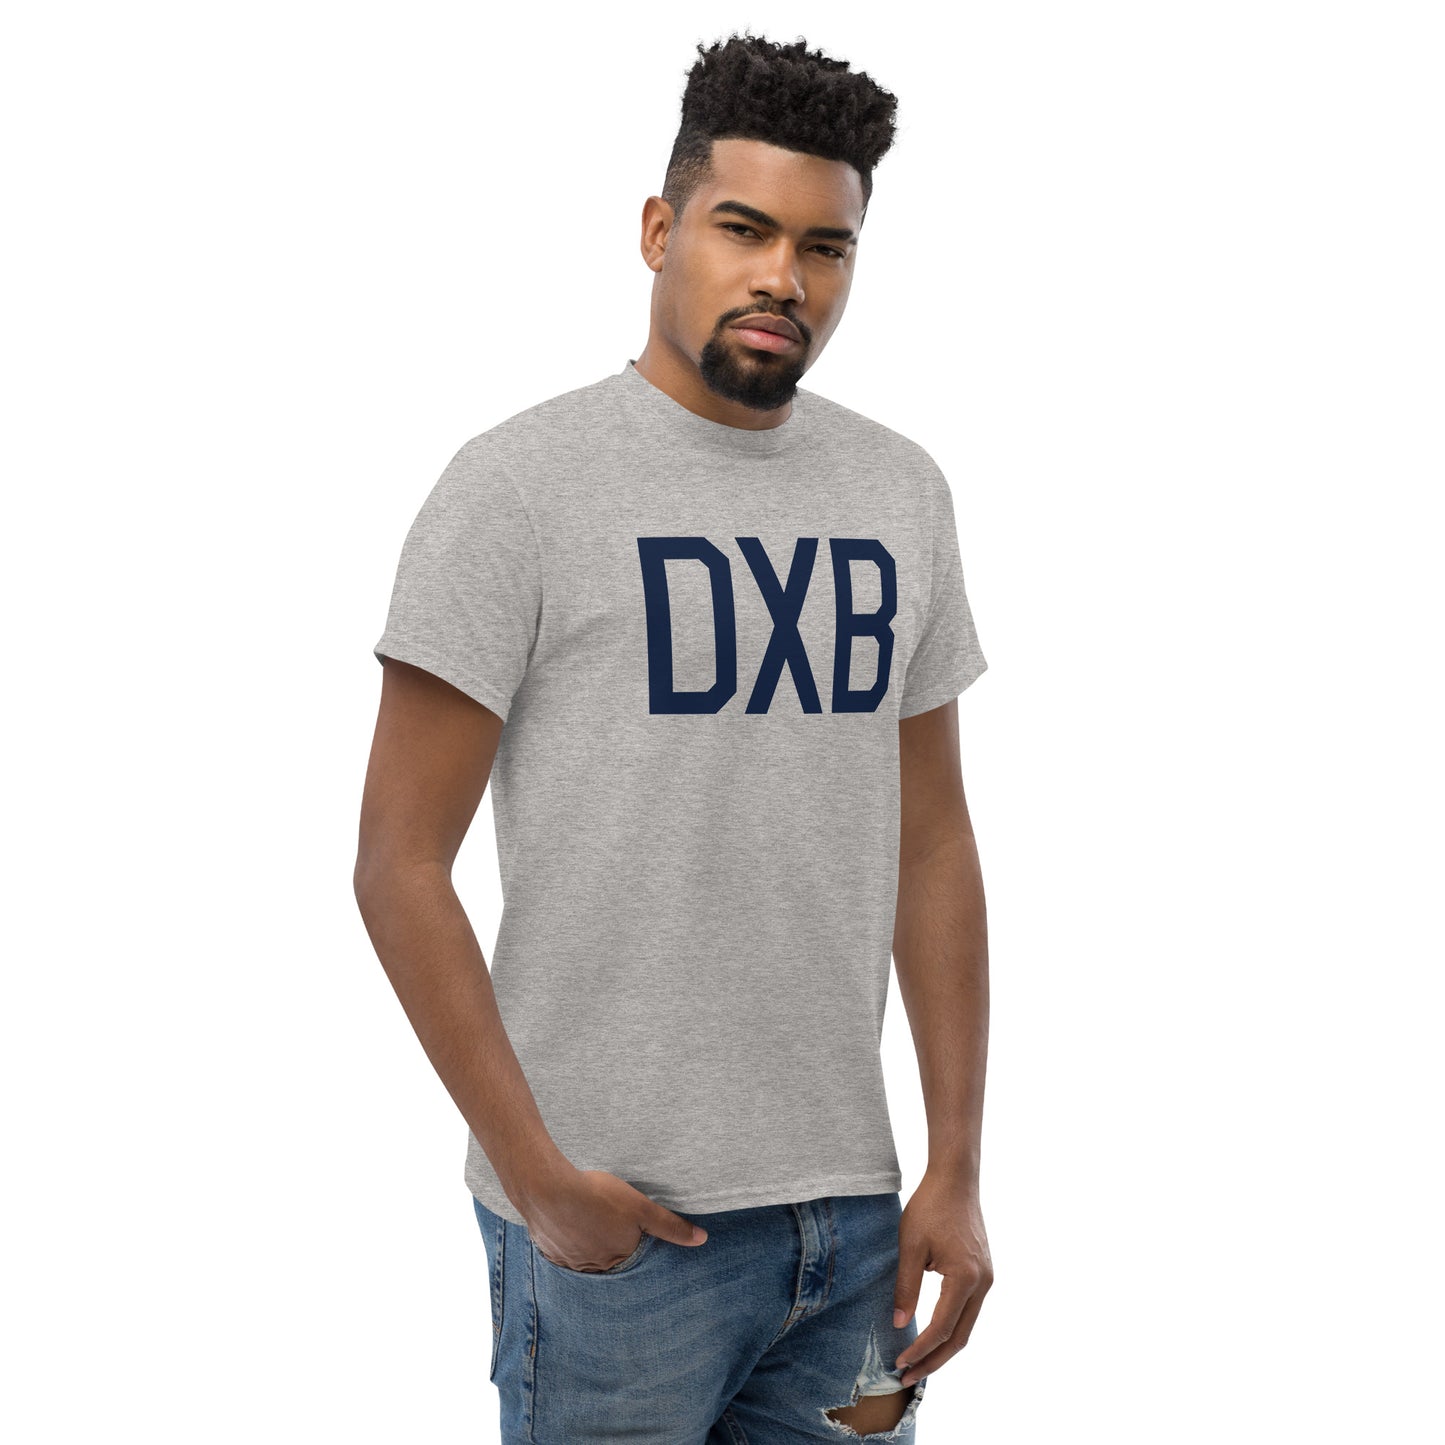 Aviation-Theme Men's T-Shirt - Navy Blue Graphic • DXB Dubai • YHM Designs - Image 08